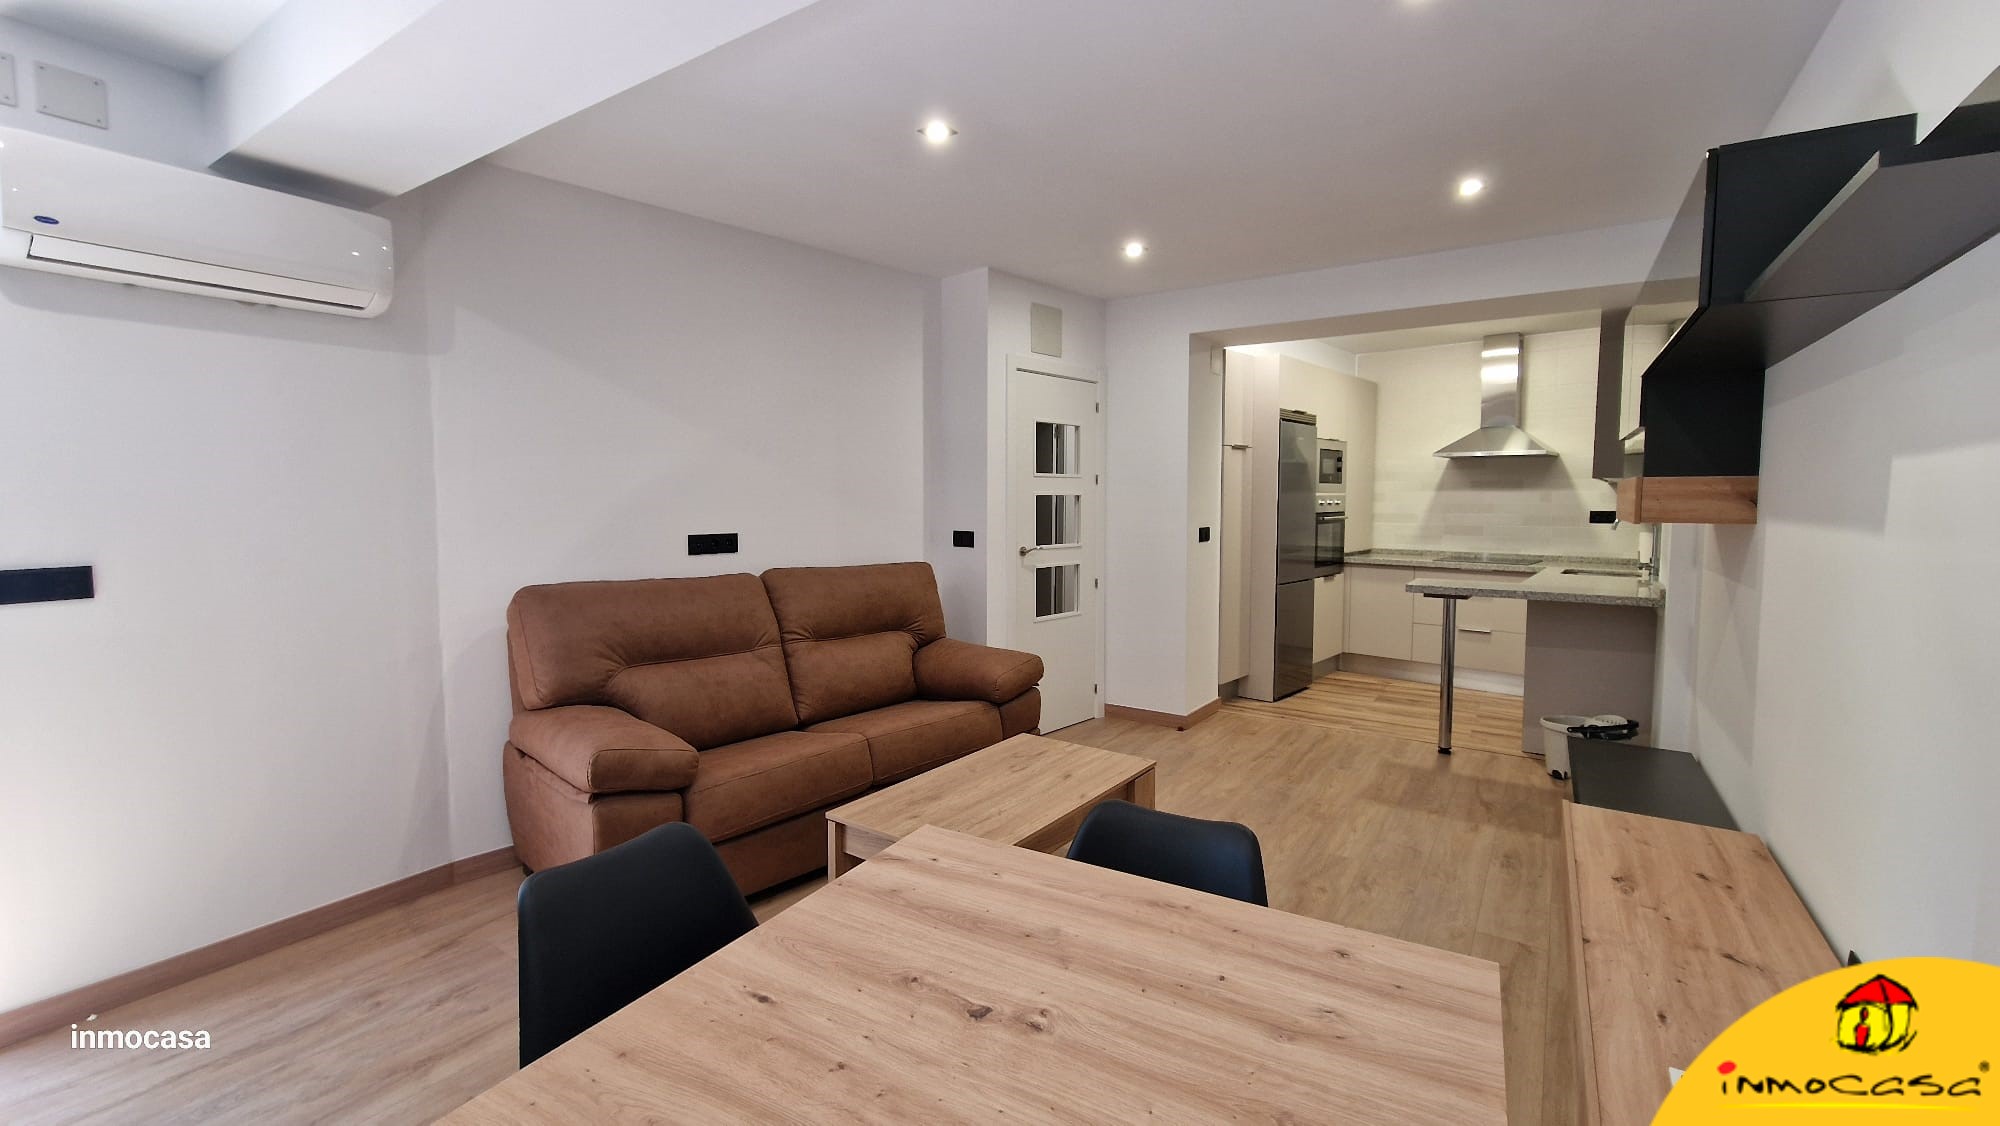 Bonito apartamento nuevo a estrenar con amplia terraza en pleno centro de Alcalá la Real